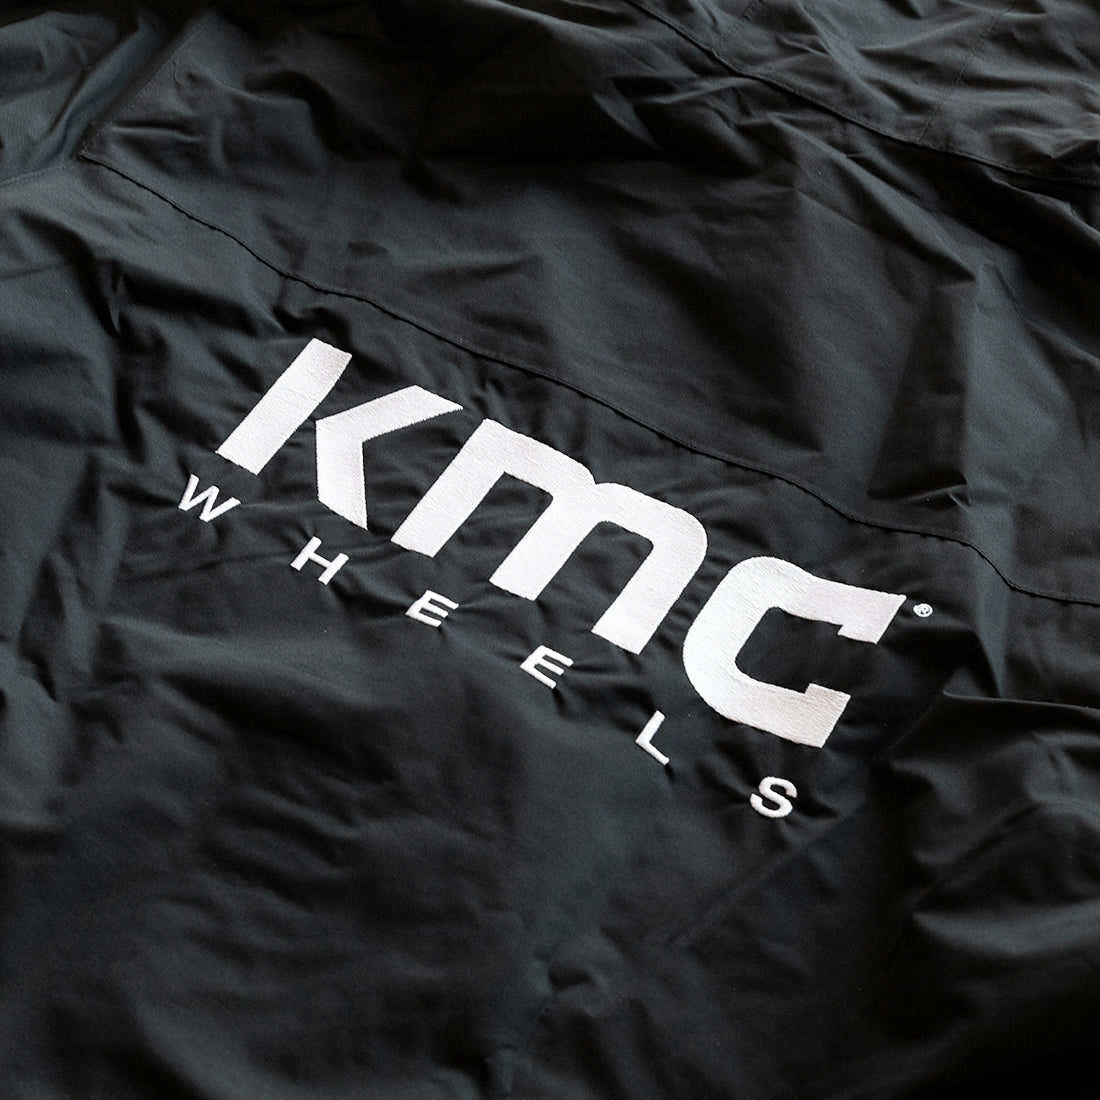 KMC Jacket